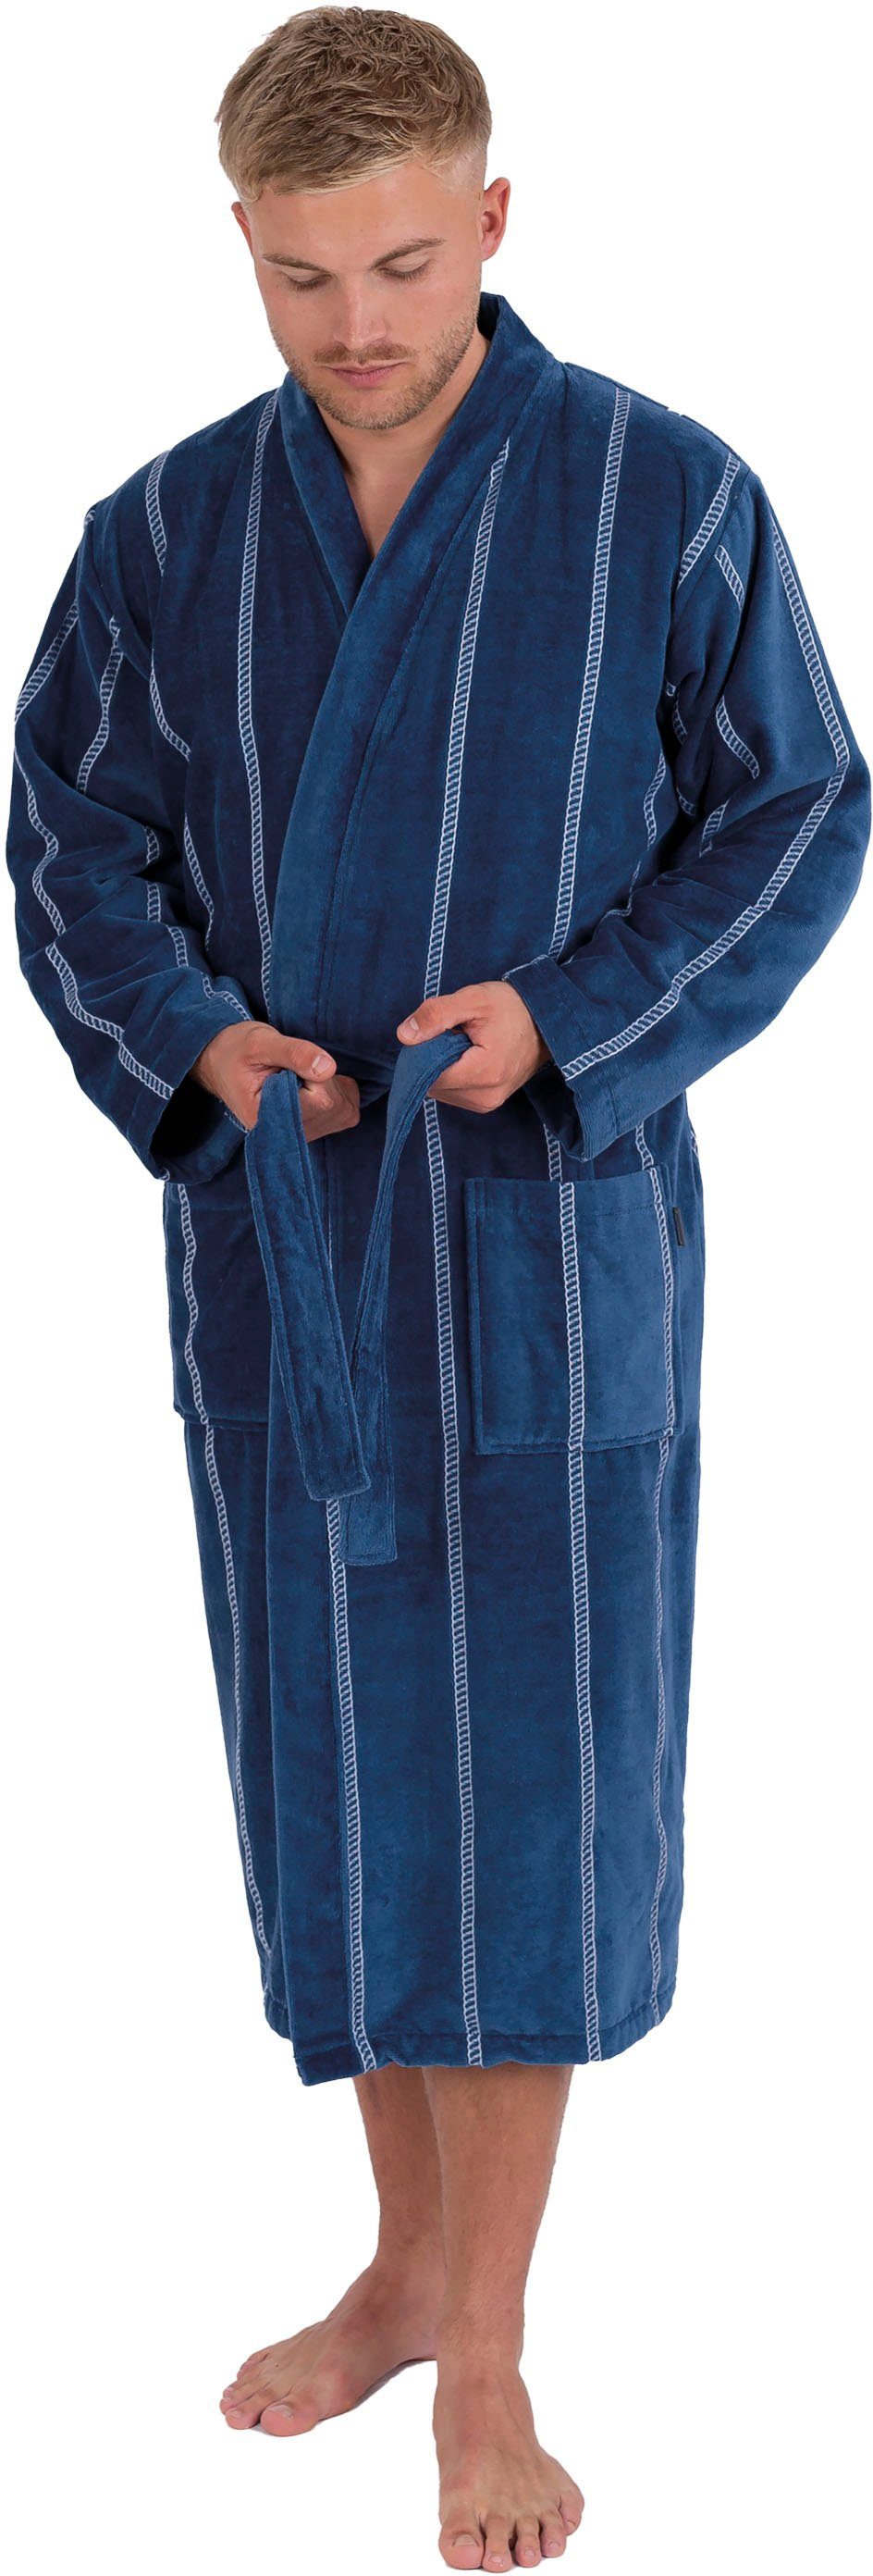 Wewo fashion Herrenbademantel 1607, Langform, Baumwolle, Kimono-Kragen, Gürtel, mit Kimono-Kragen, gestreift, lang dunkelblau